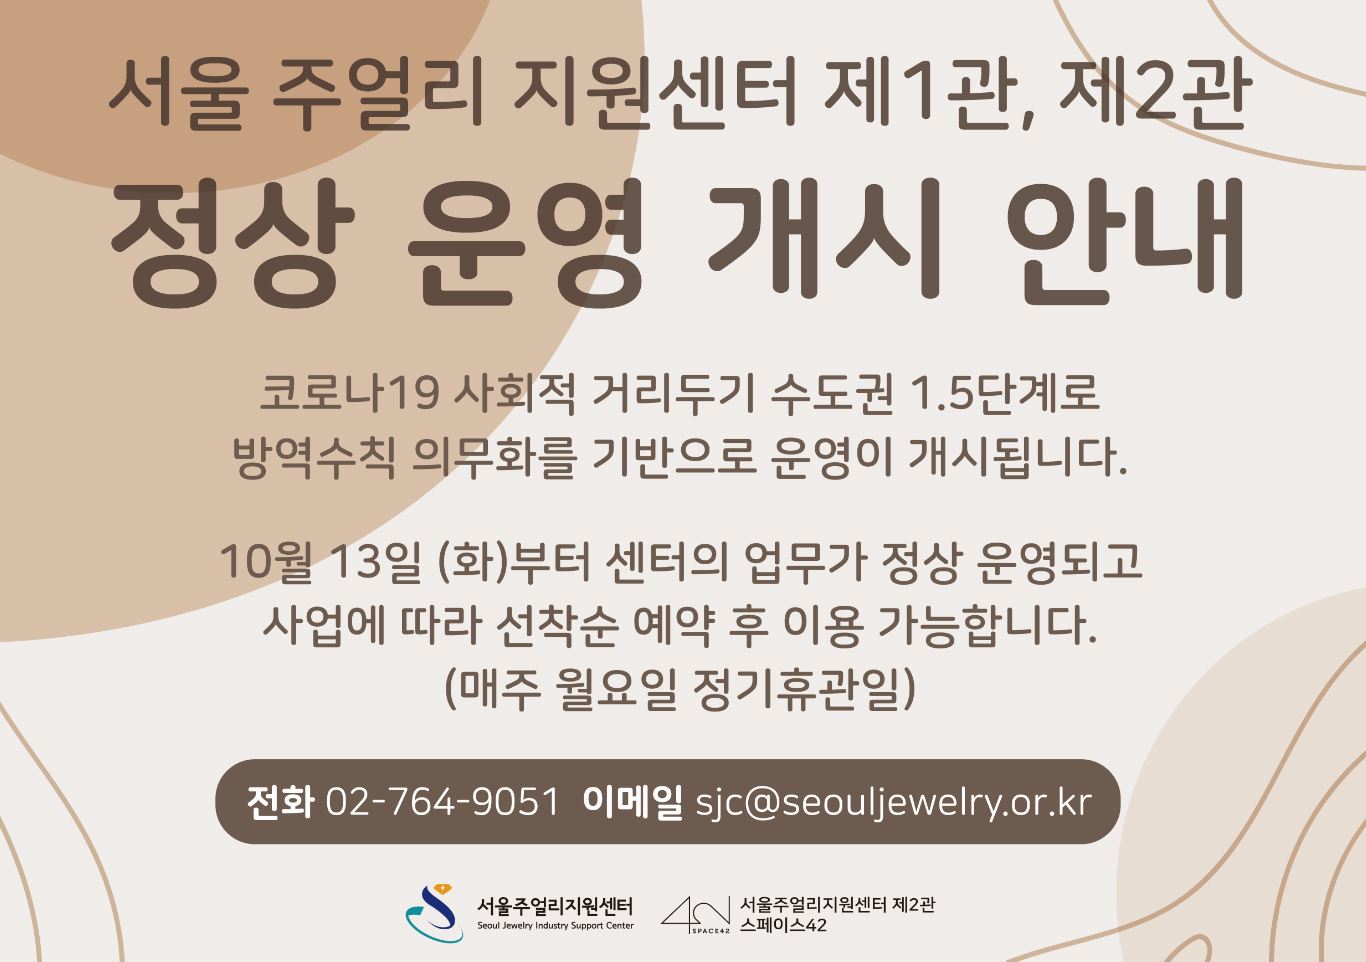 서울주얼리지원센터 제1관, 제2관 운영 개시 안내